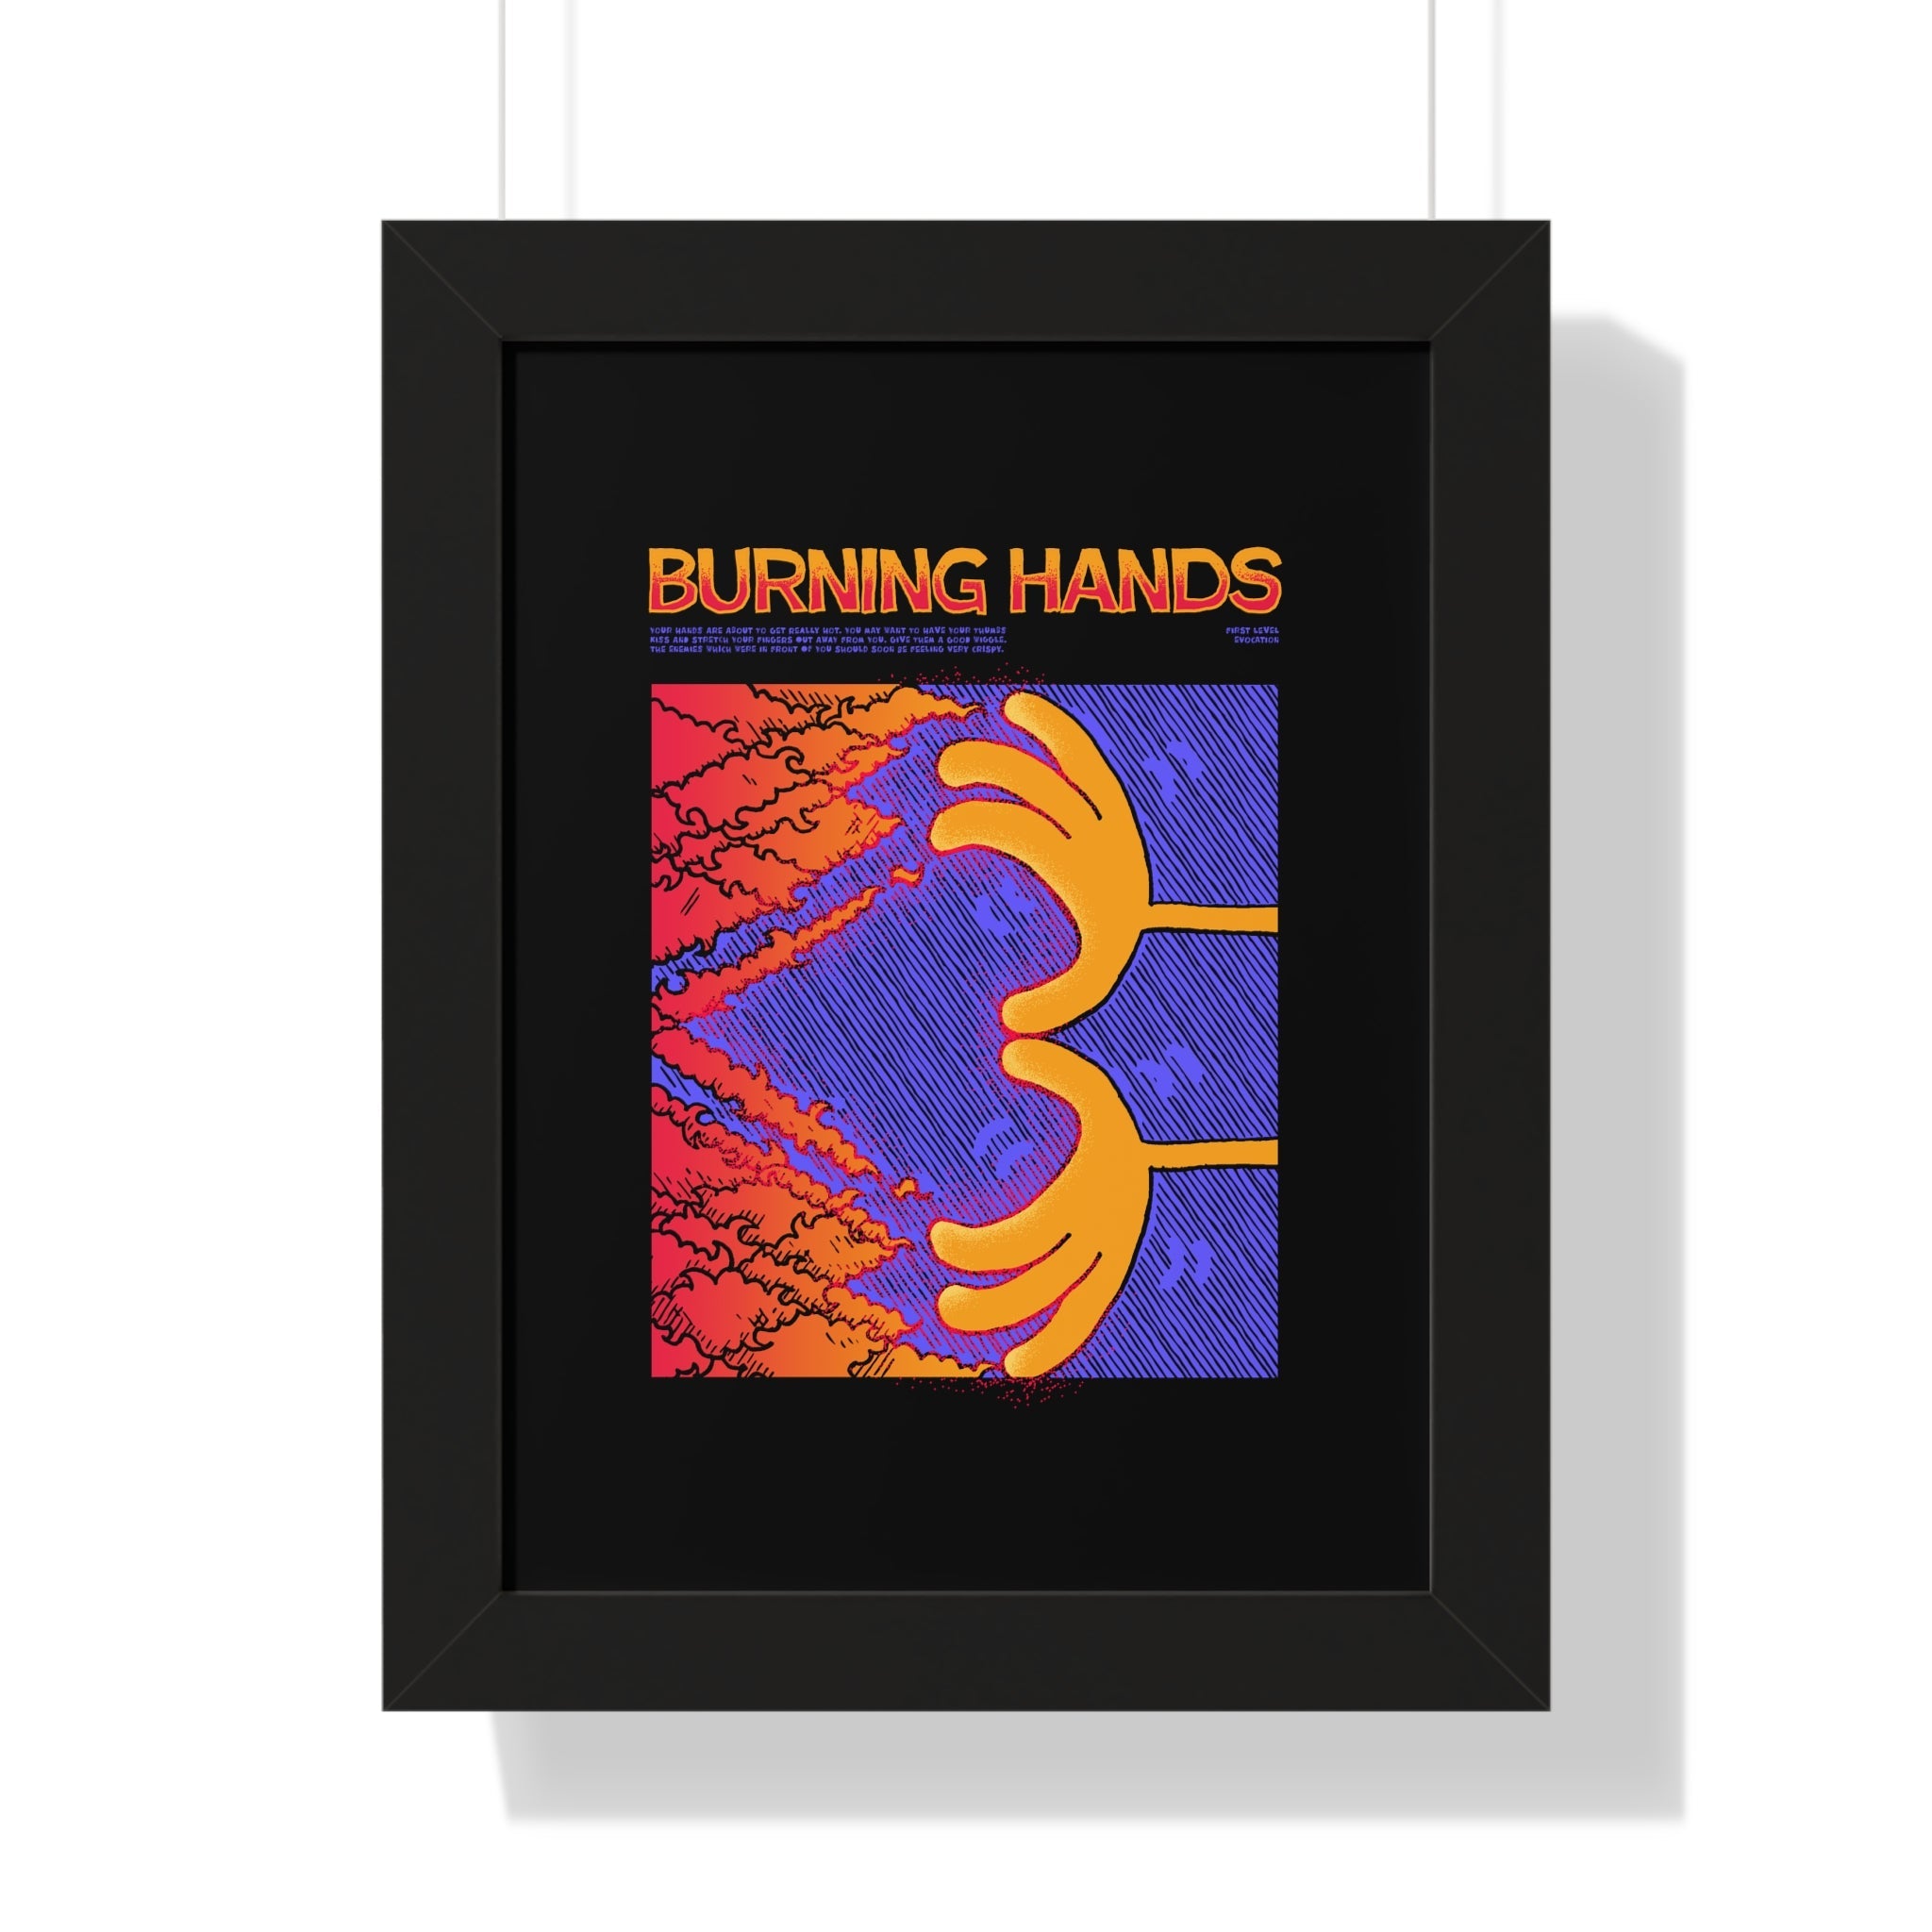 Burning Hands | Framed Poster - Framed Poster - Ace of Gnomes - 10377362346387370193